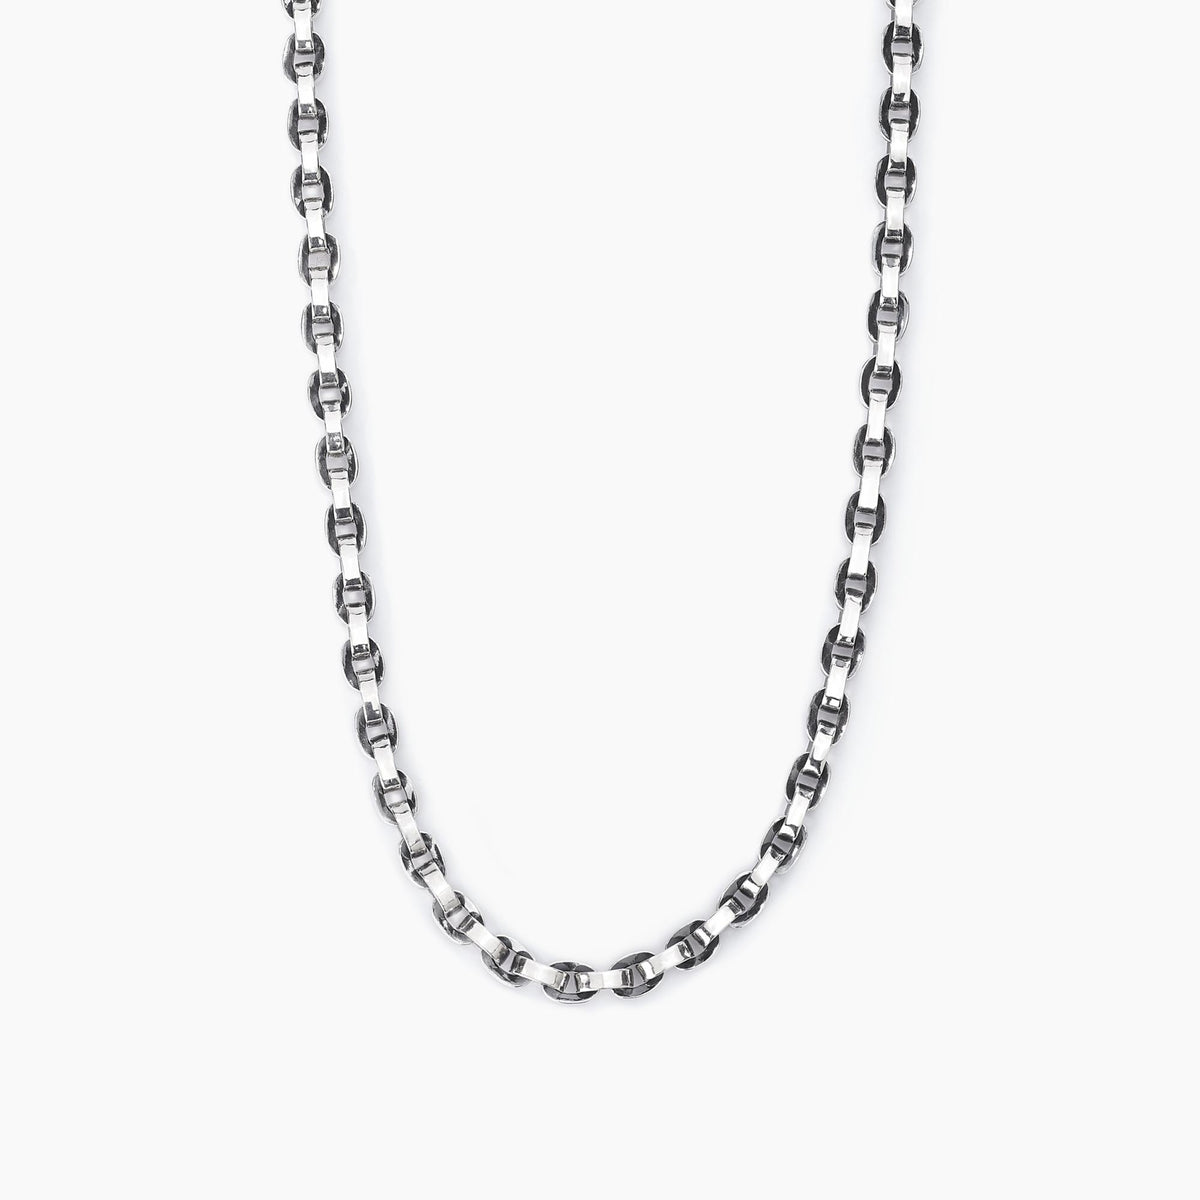 Men's necklace in silver Mabina Gioielli 553374 